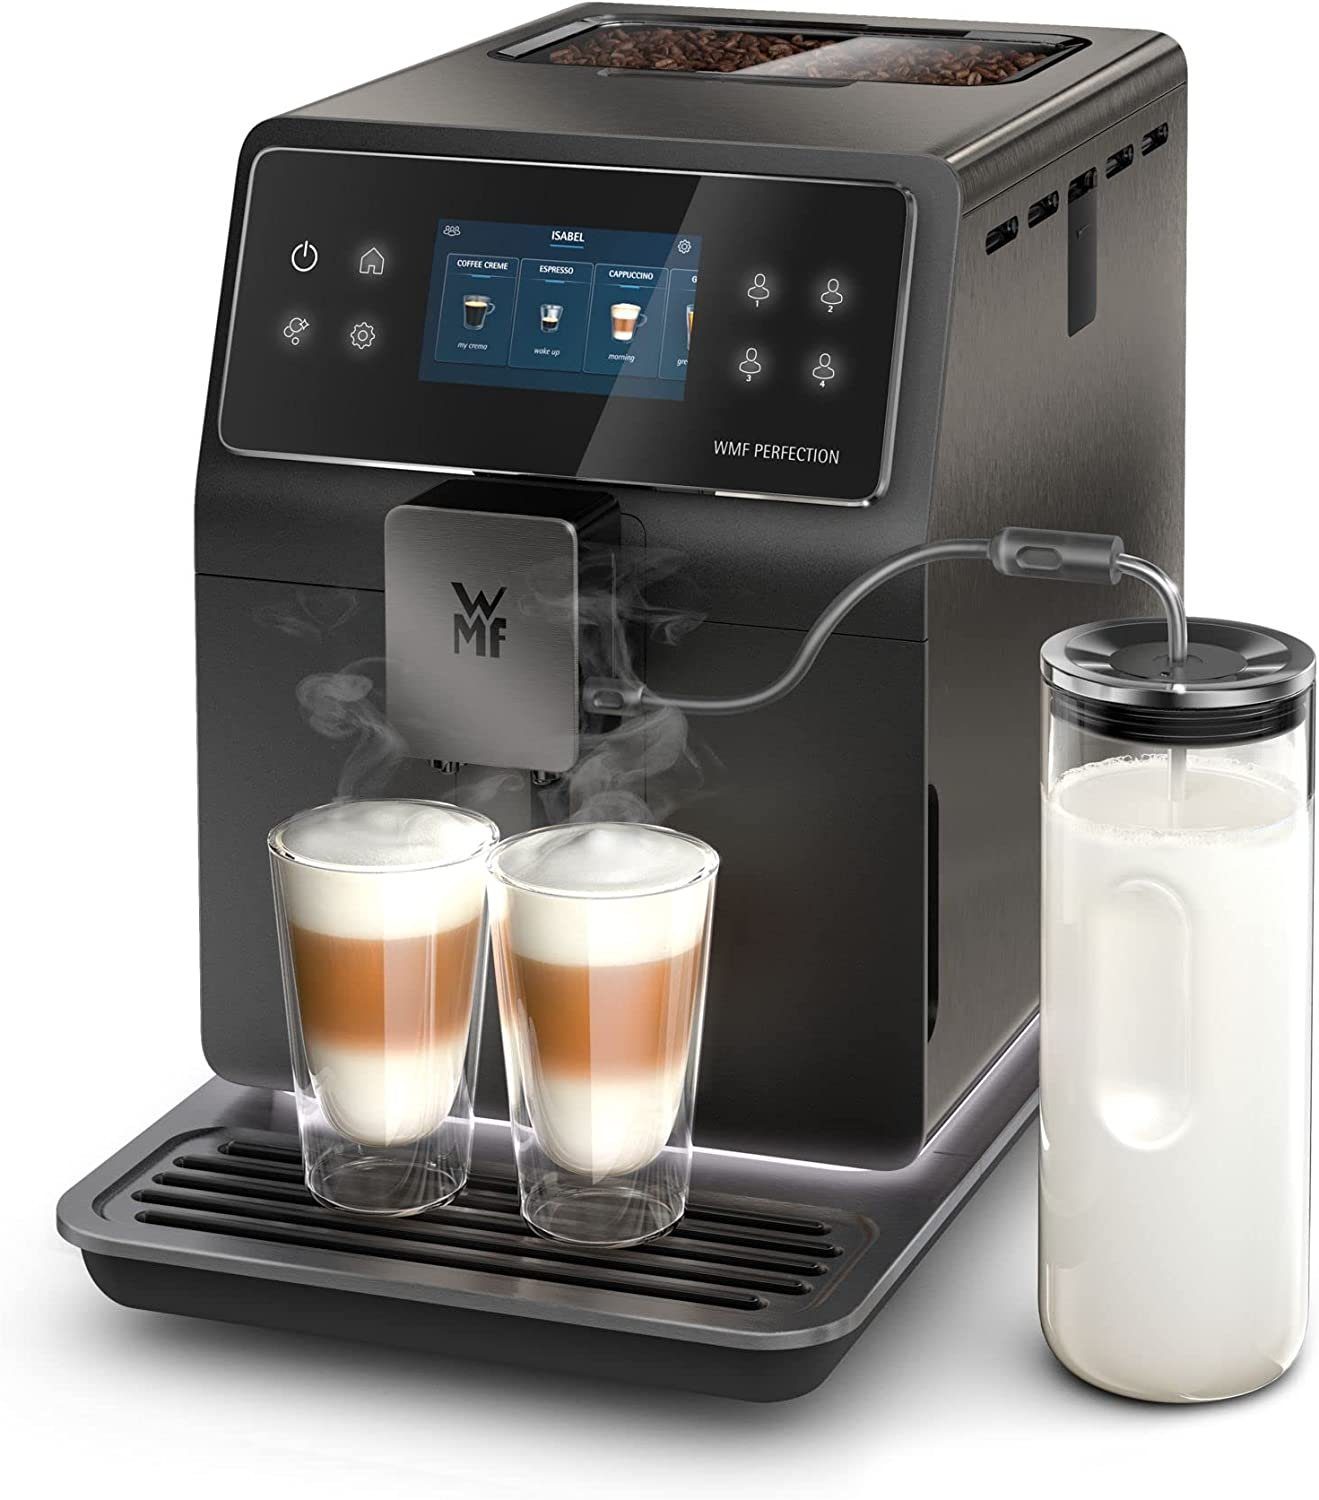 WMF Kaffeevollautomat Perfection 890L, mit Milchsystem, 18  Getränkespezialitäten, Double Thermoblock, Edelstahl-Mahlwerk,  Nutzerprofil, 1l Milchbehälter online kaufen | OTTO